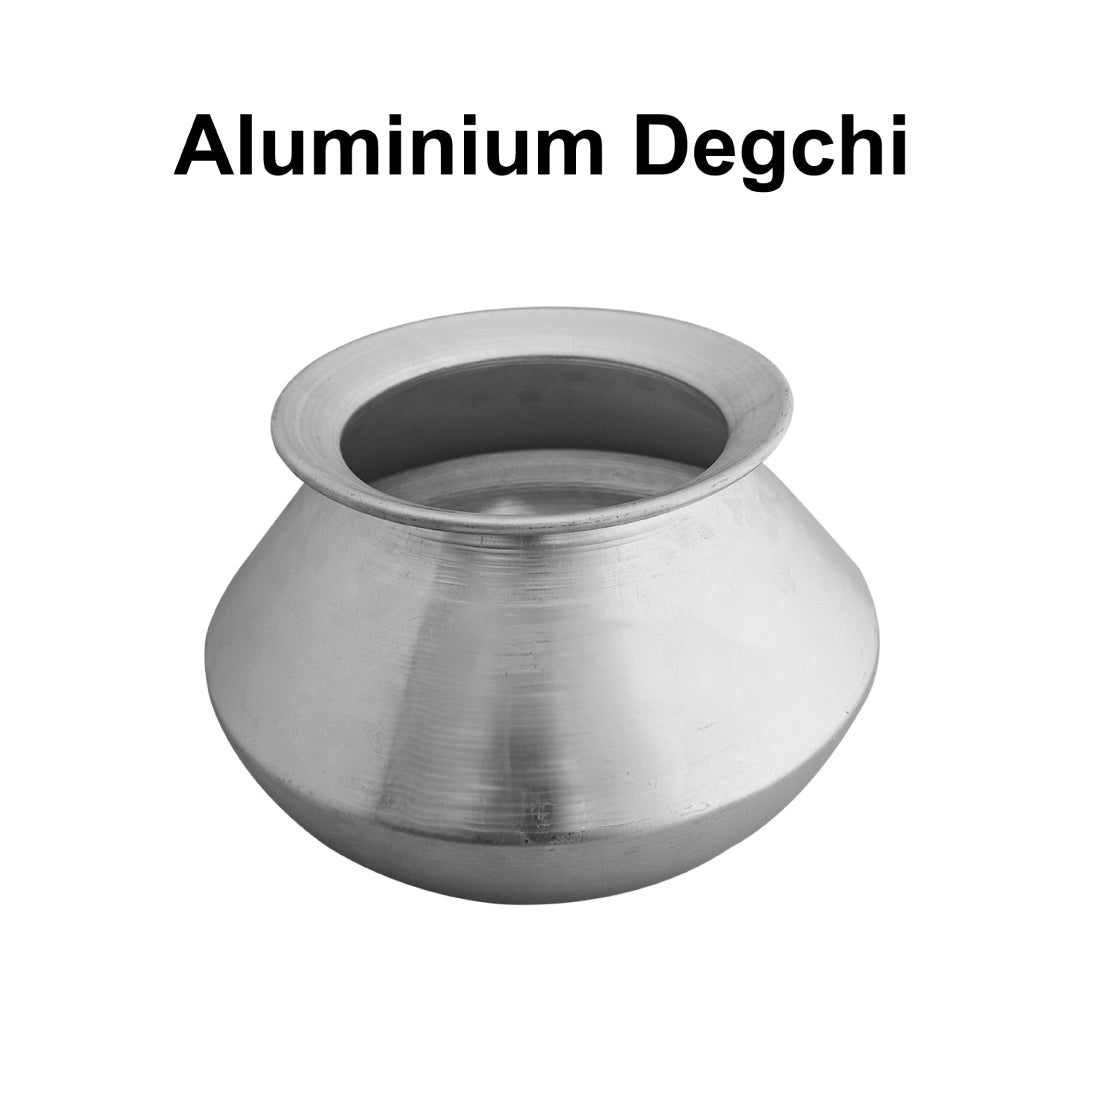 Aluminium Degchi